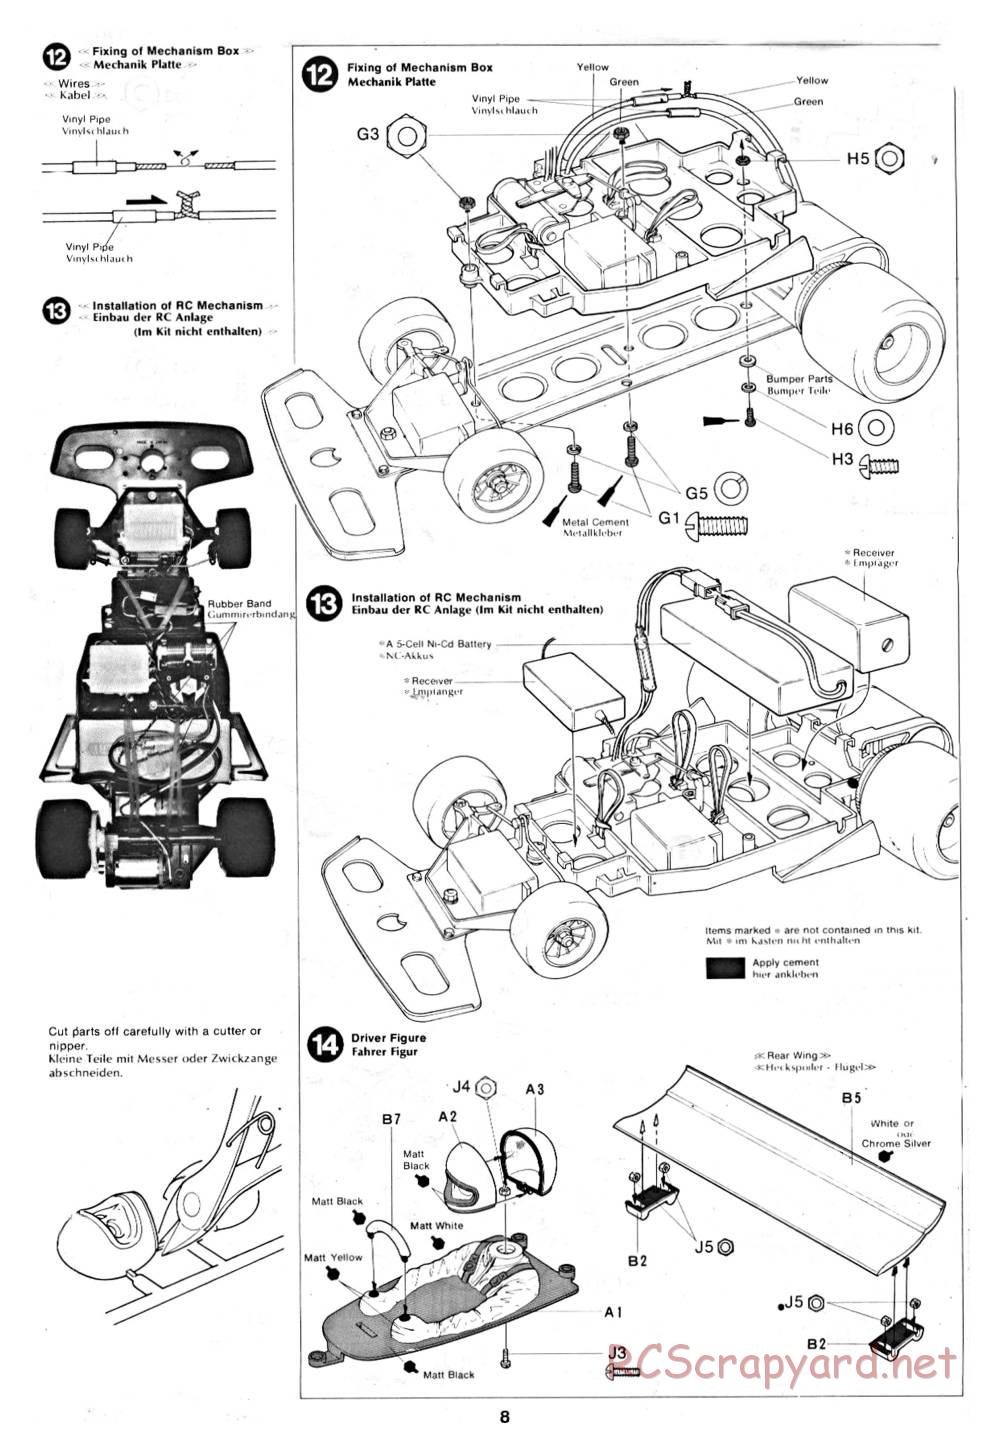 Tamiya - March 782 BMW (F2) - 58013 - Manual - Page 8